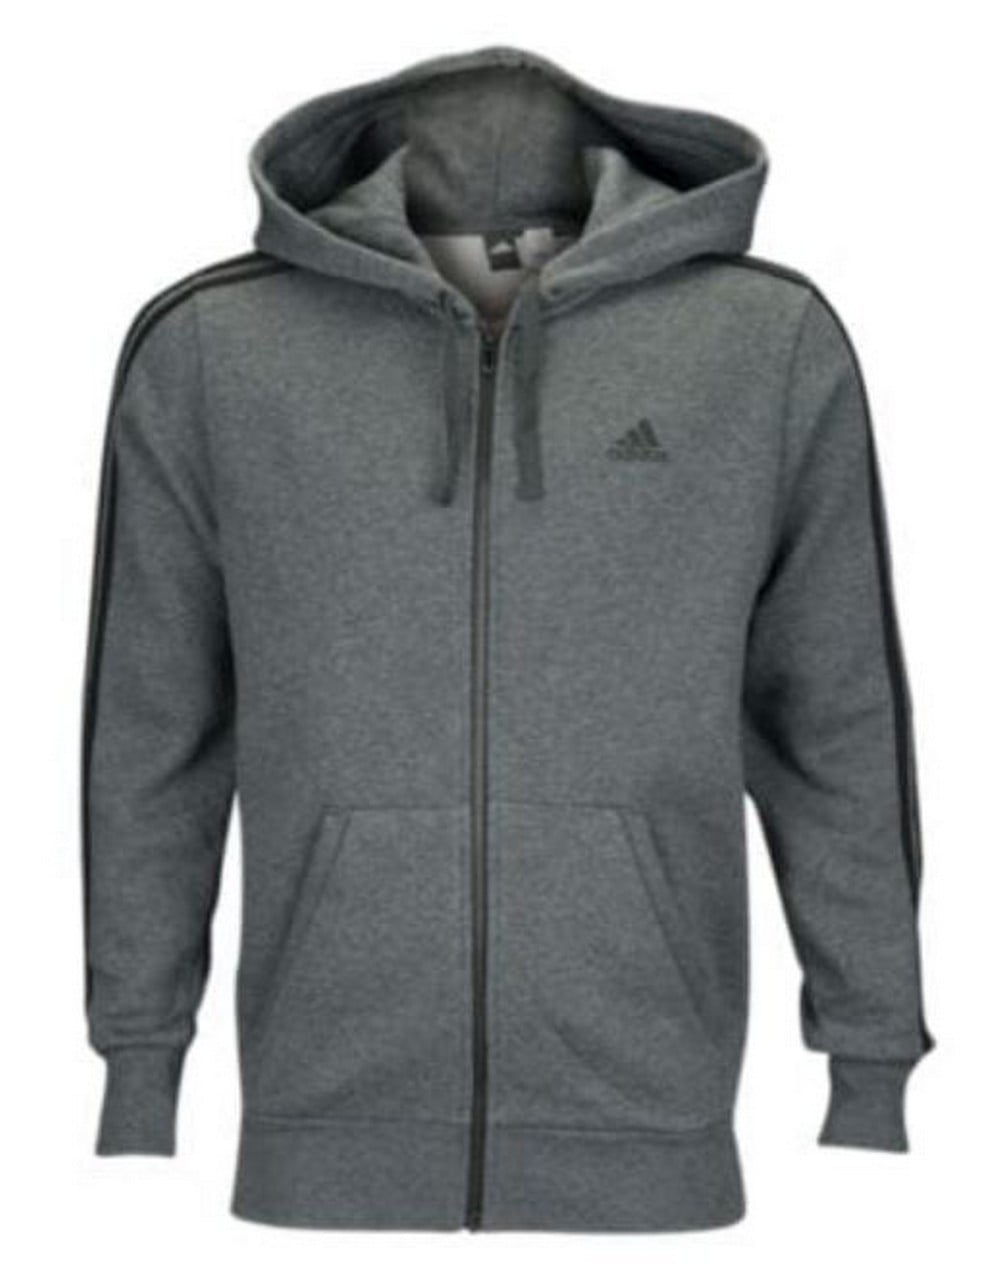 adidas men's fleece hoodie